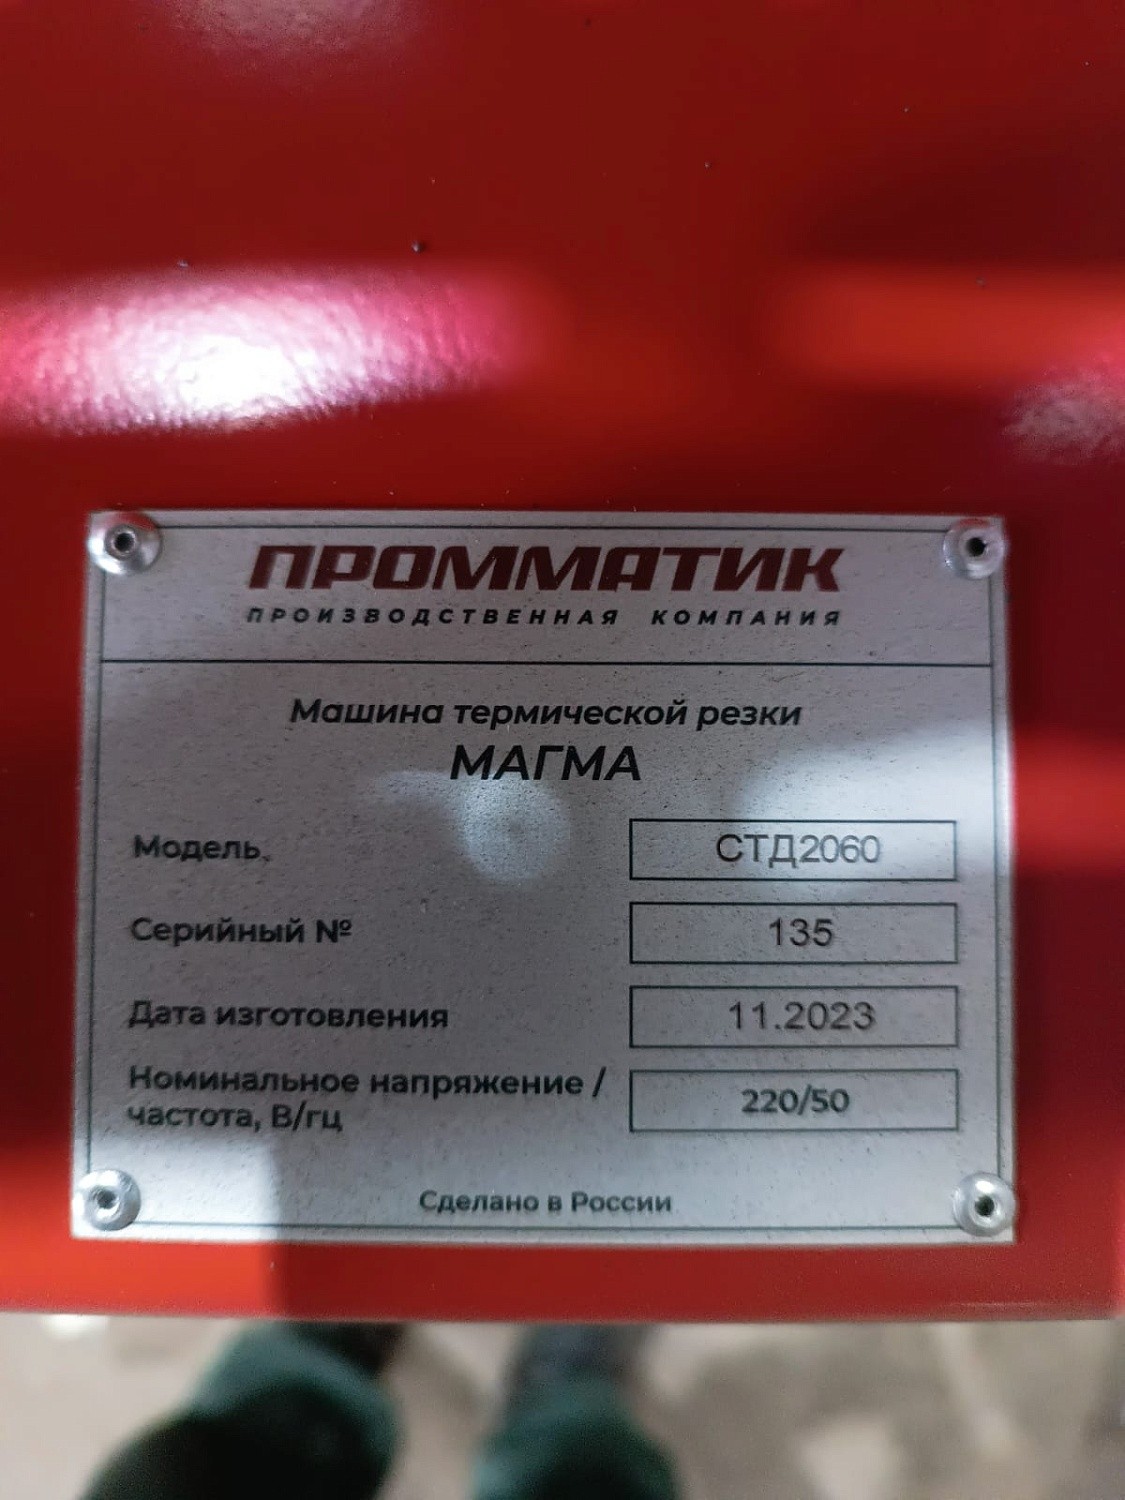 Запуск станка плазменной резки МАГМА СТД 2060 в Ростовской области